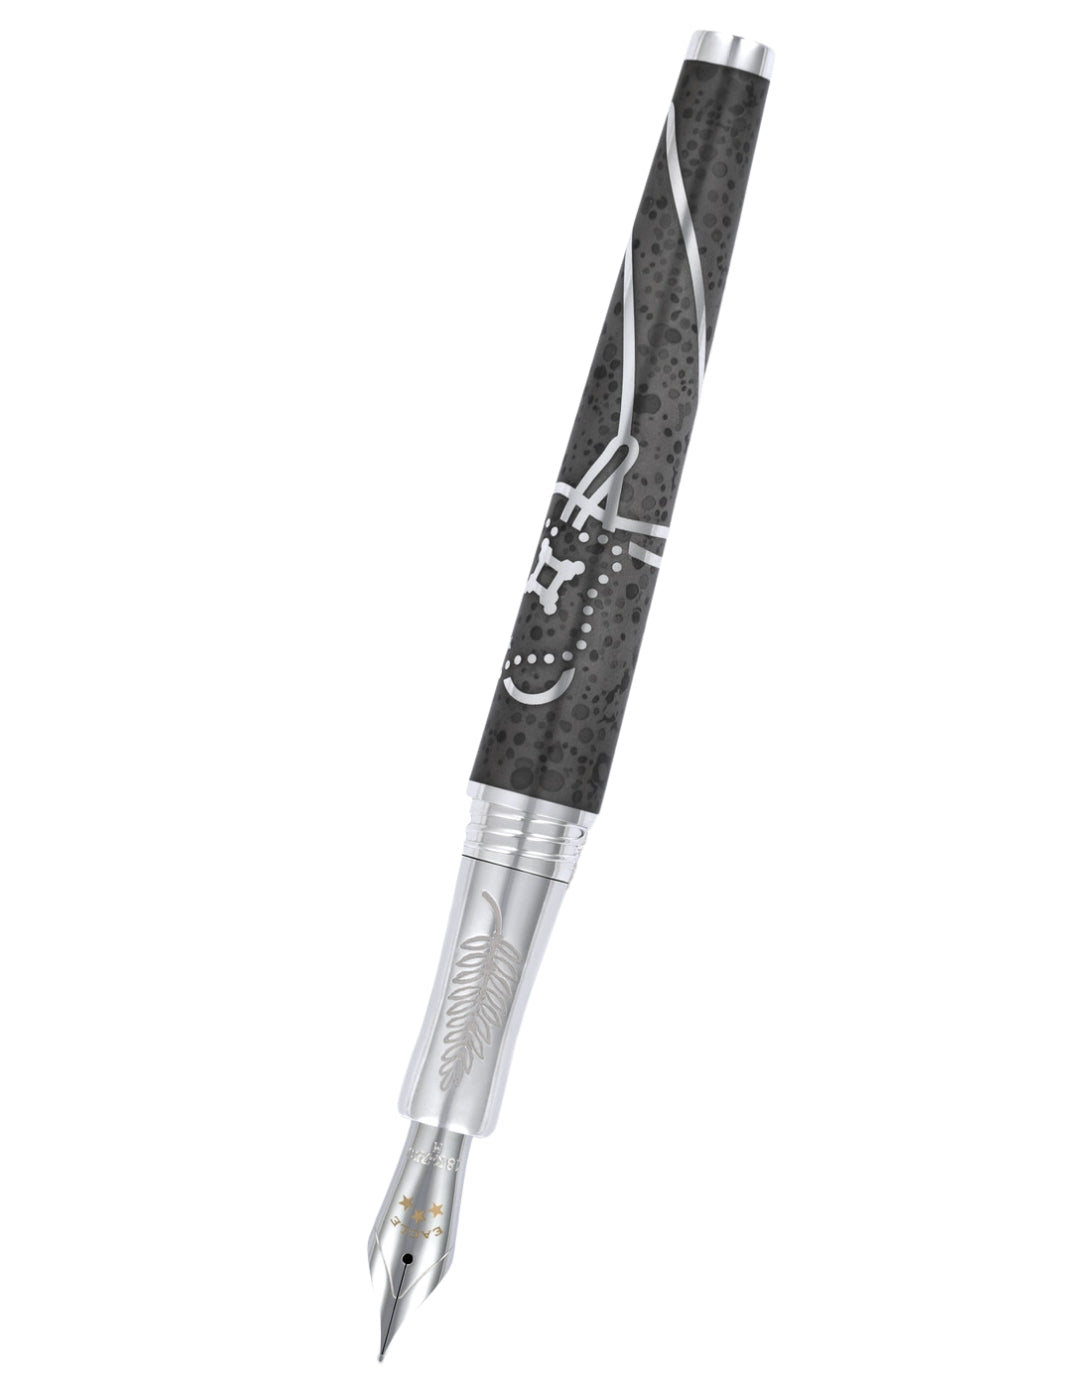 Apollo 11 Limited Edition Fountain Pen